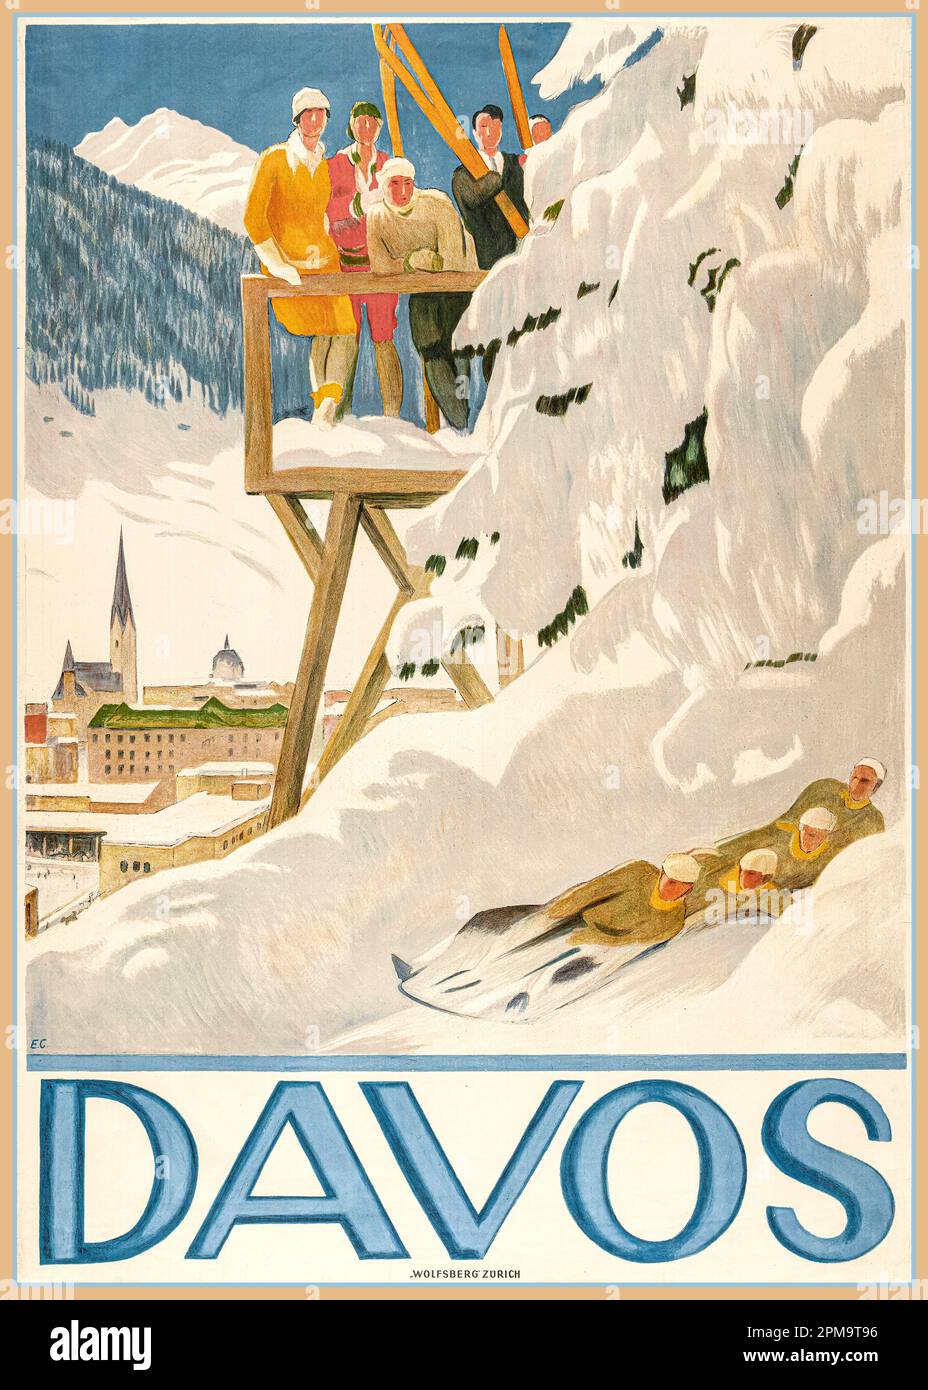 DAVOS Vintage 1918 Poster Sport invernali Davos Svizzera. Slittino / slittino / slitta con gli spettatori che guardano l'azione nella neve d'inverno 1918 di Emil Cardinaux litografia Wolfsburg Zurigo Svizzera Foto Stock